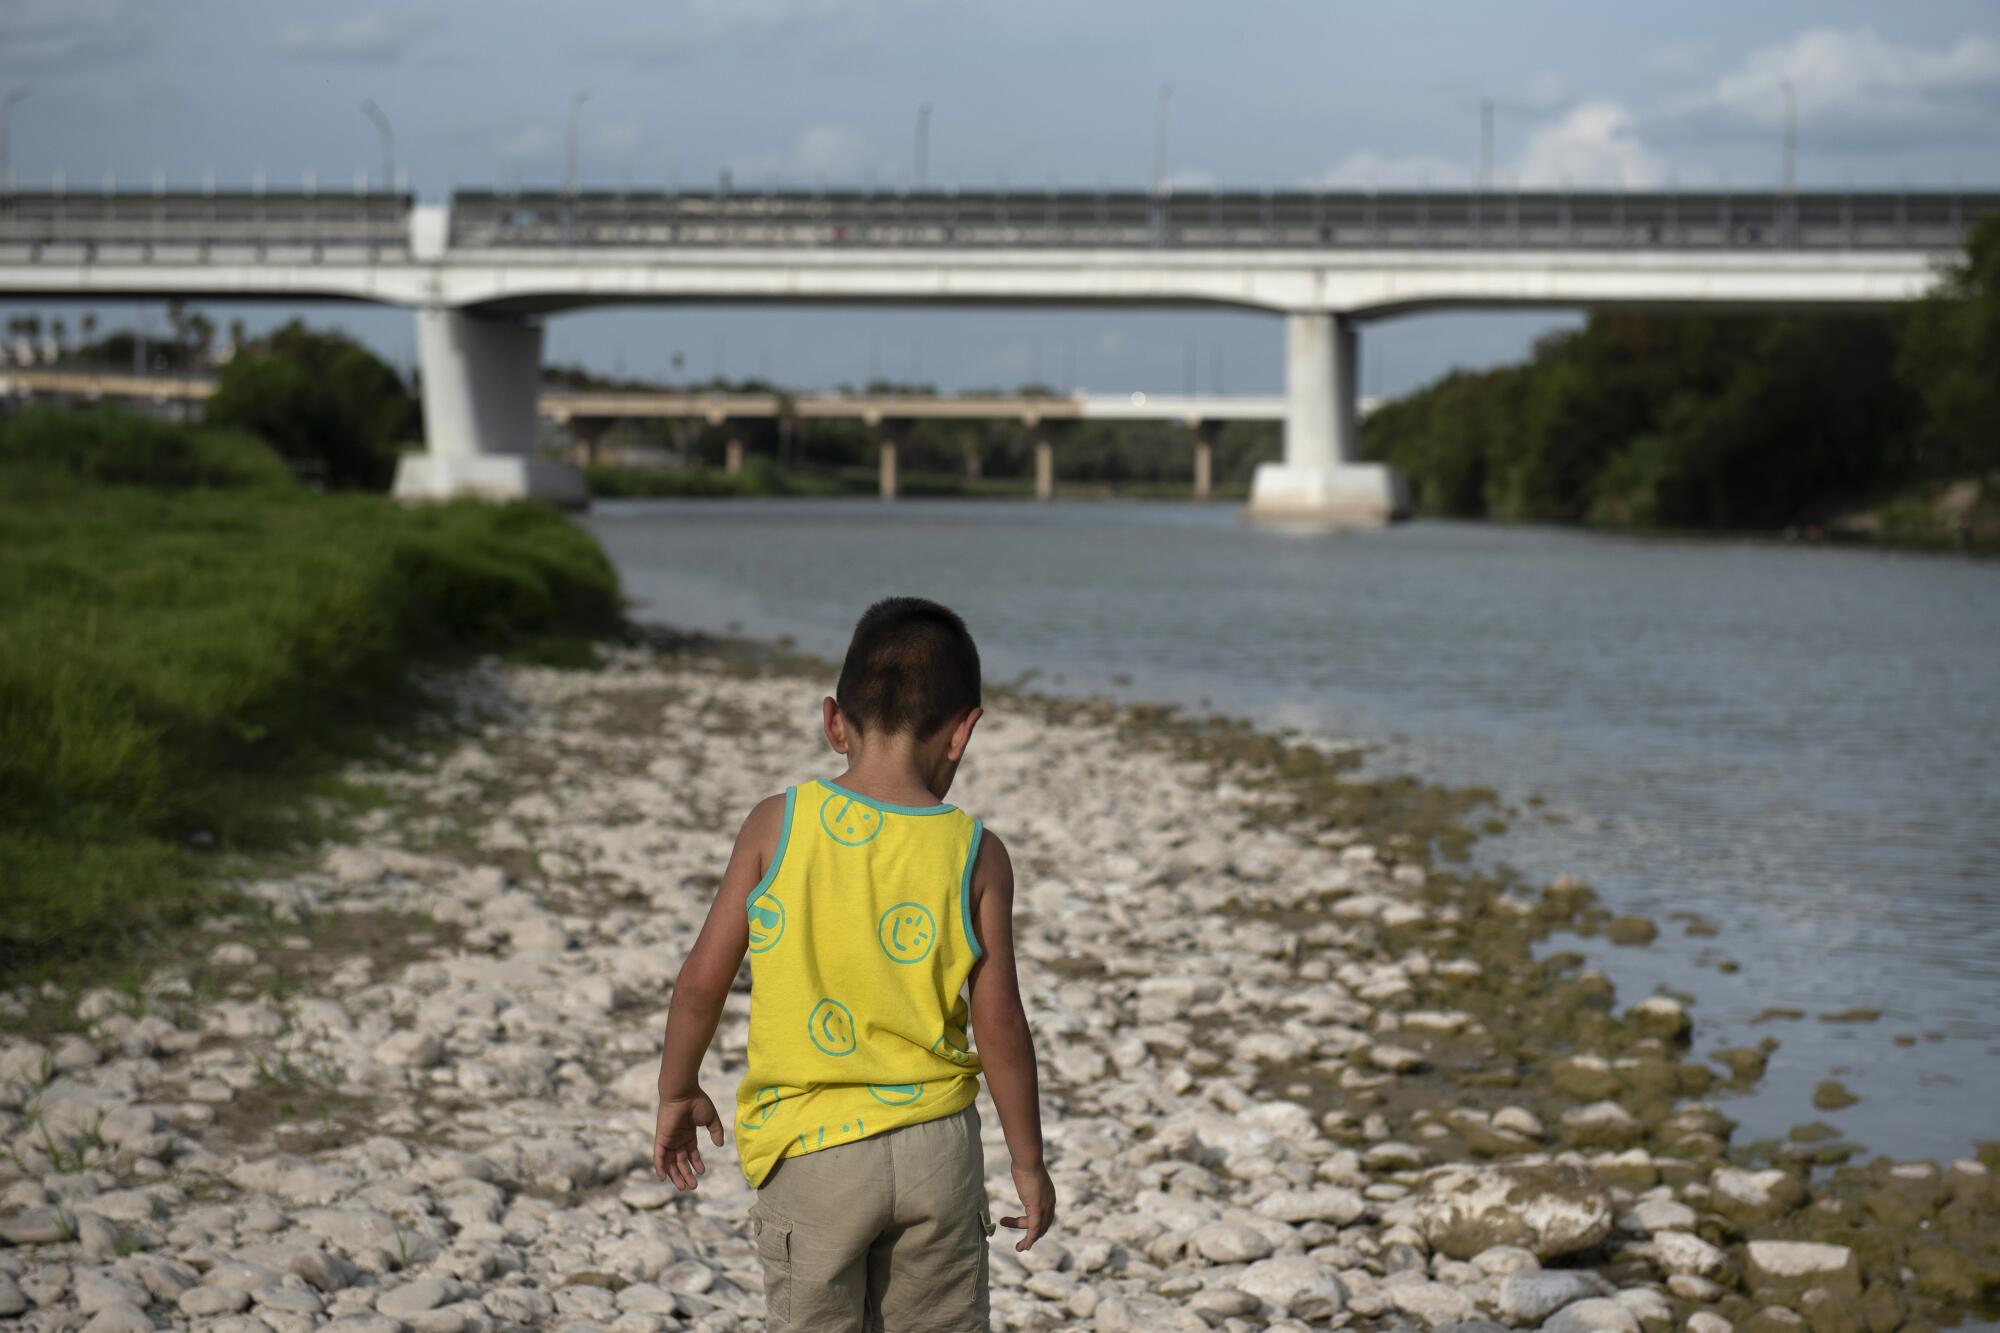 A child walks along the bank of the Rio Grande in Laredo, Texas.